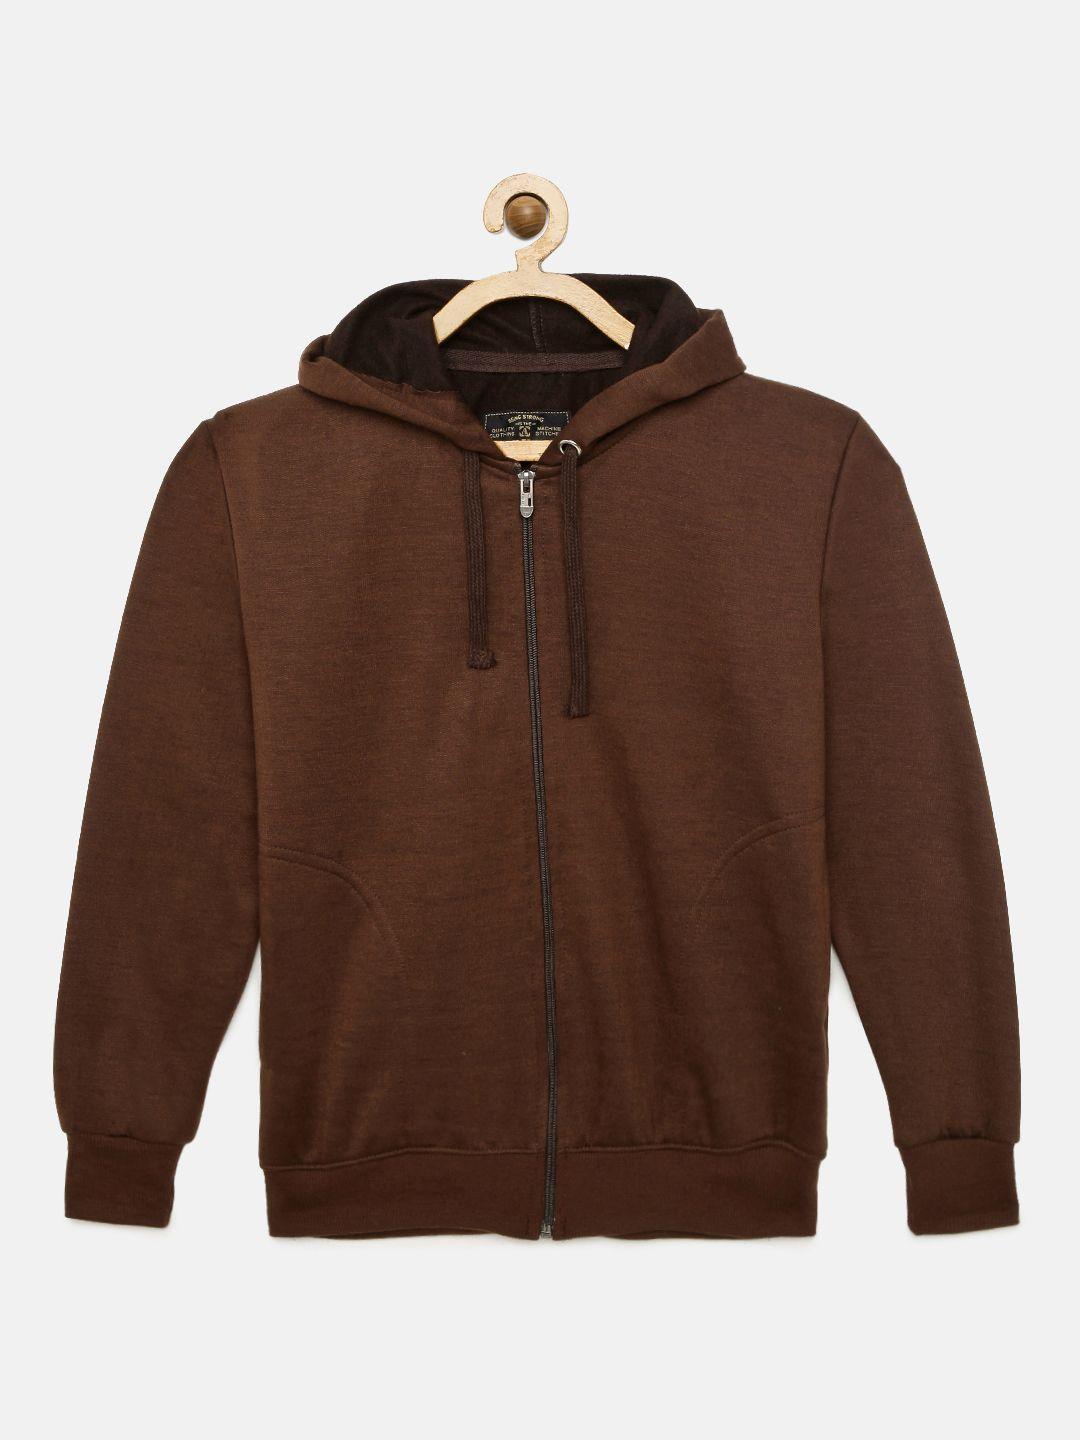 adbucks-boys-brown-solid-hooded-sweatshirt